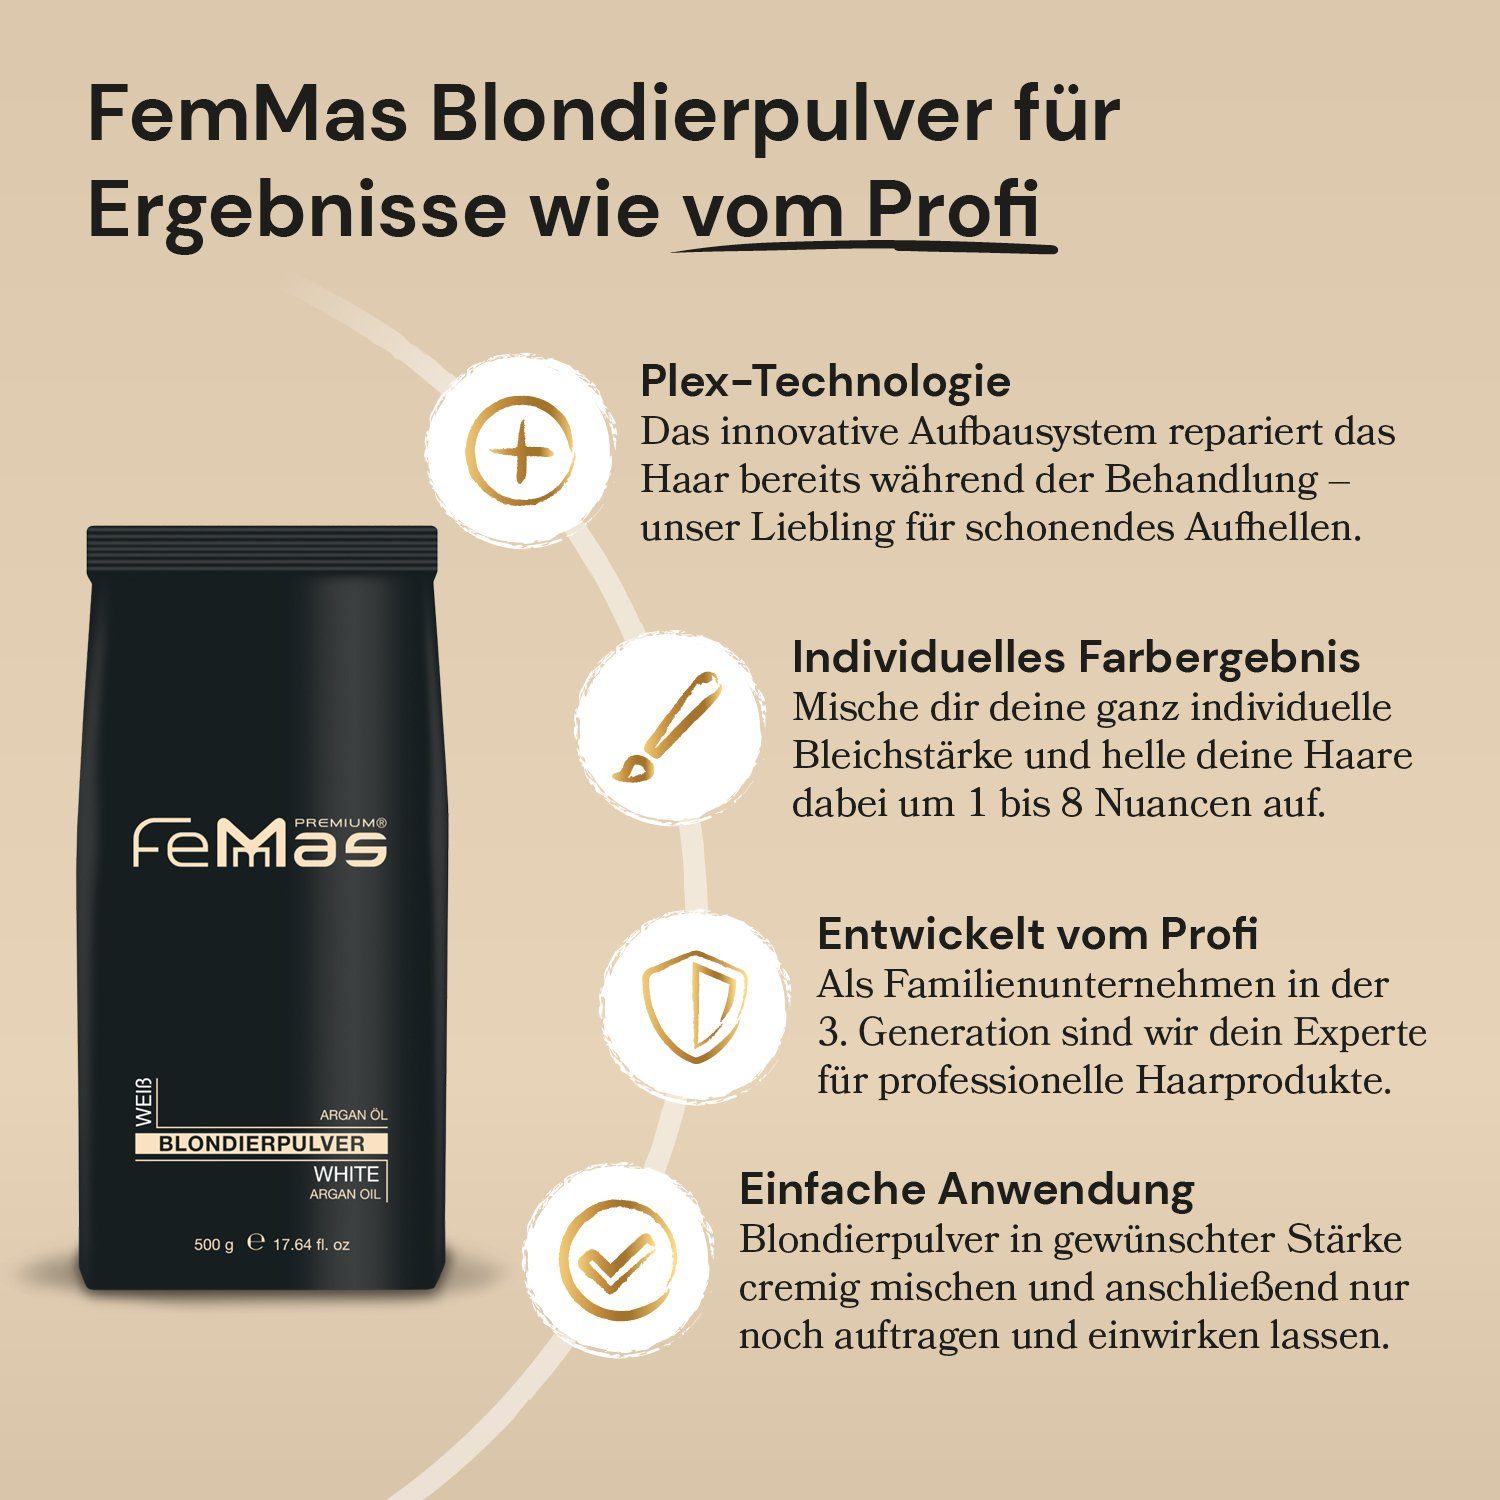 500g Premium Technologie Blondierpulver FemMas Femmas Weiß Arganöl & Blondierpulver Plex